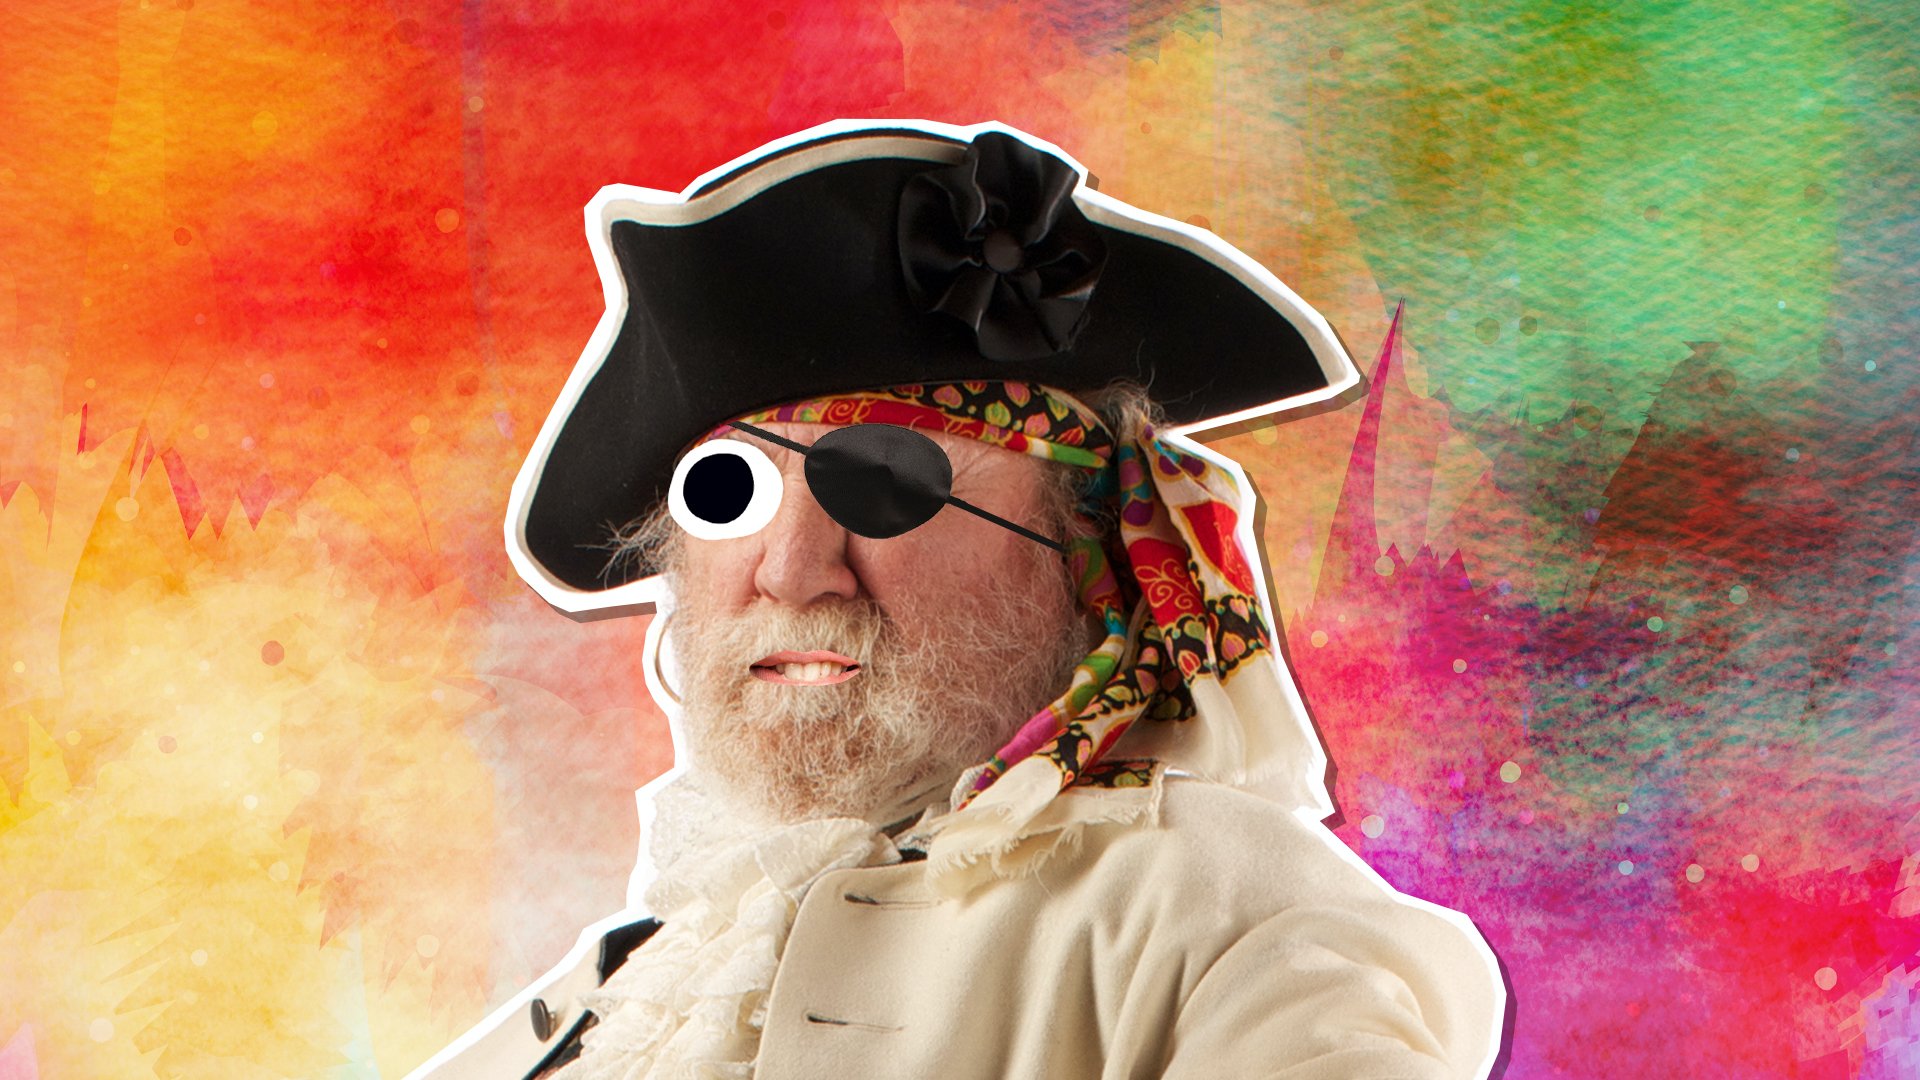 A pirate